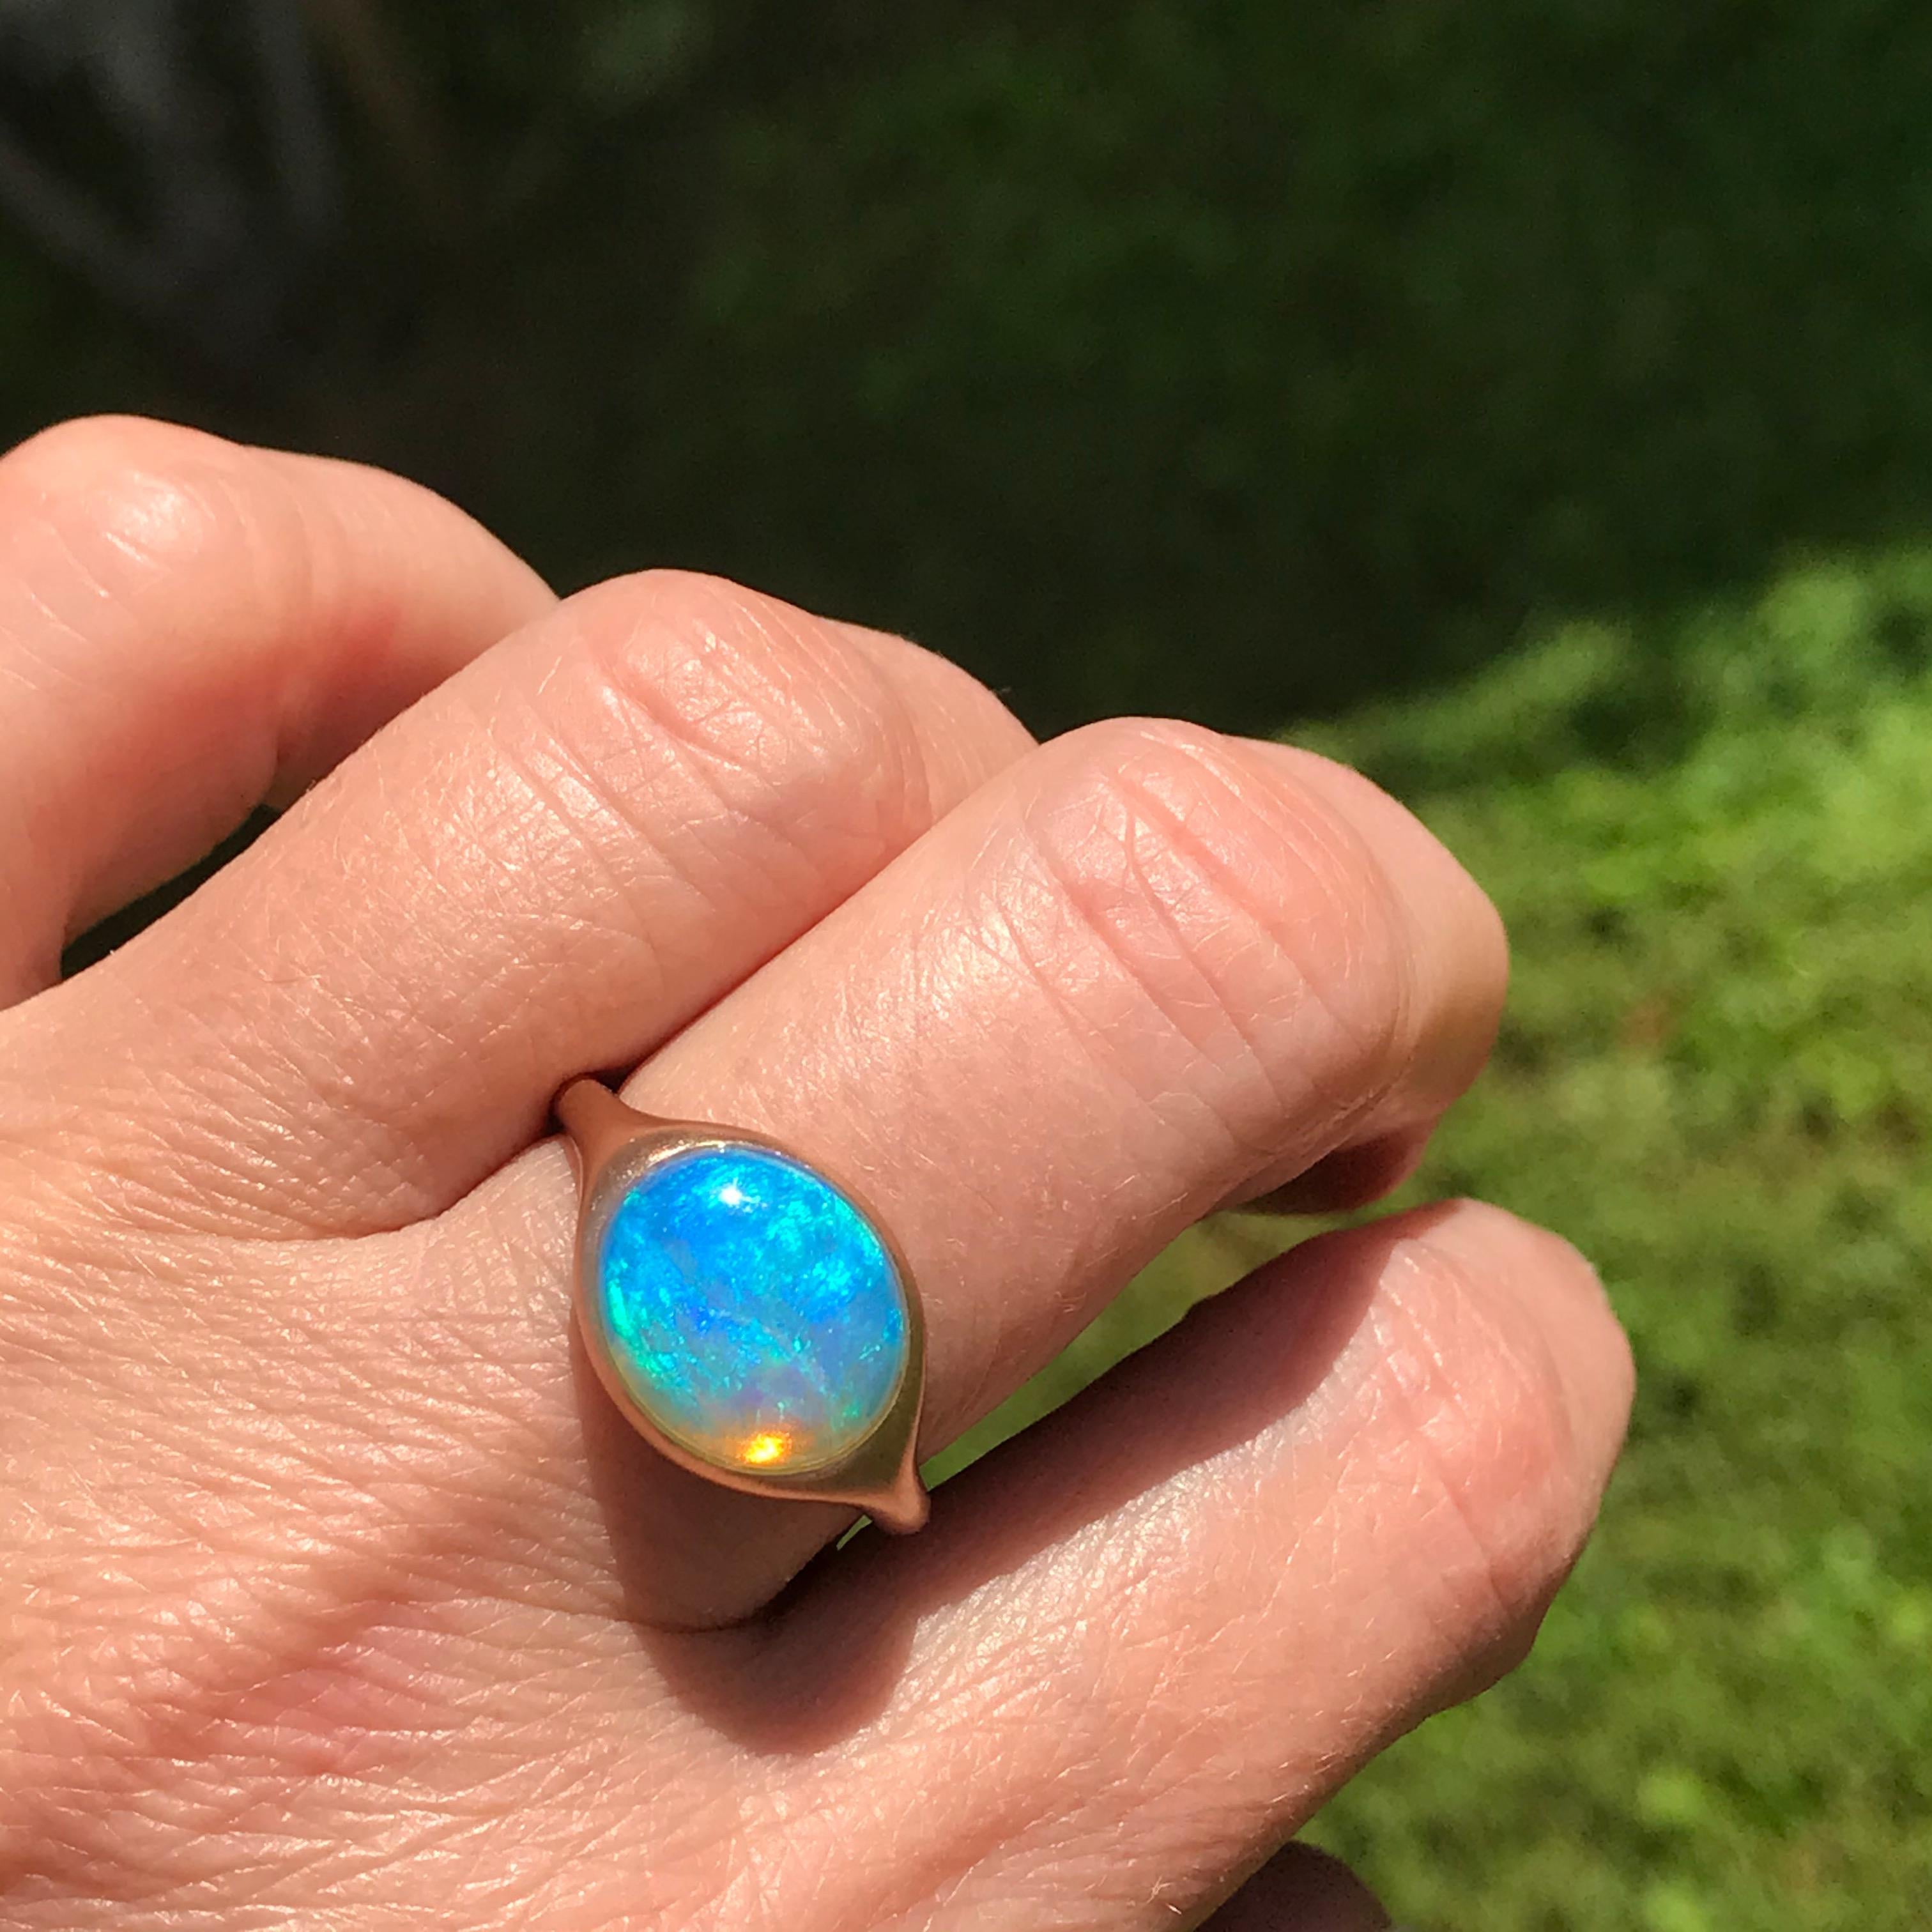 Dalben design Einzigartiger Ring aus 18 kt Roségold mit mattierter Oberfläche und 4,32 Karat in Lünettenfassung  ovaler tief hellblauer schöner australischer Opal  .  
Ringgröße 7 1/4 - EU 55 mit Größenanpassung an die meisten Fingergrößen. 